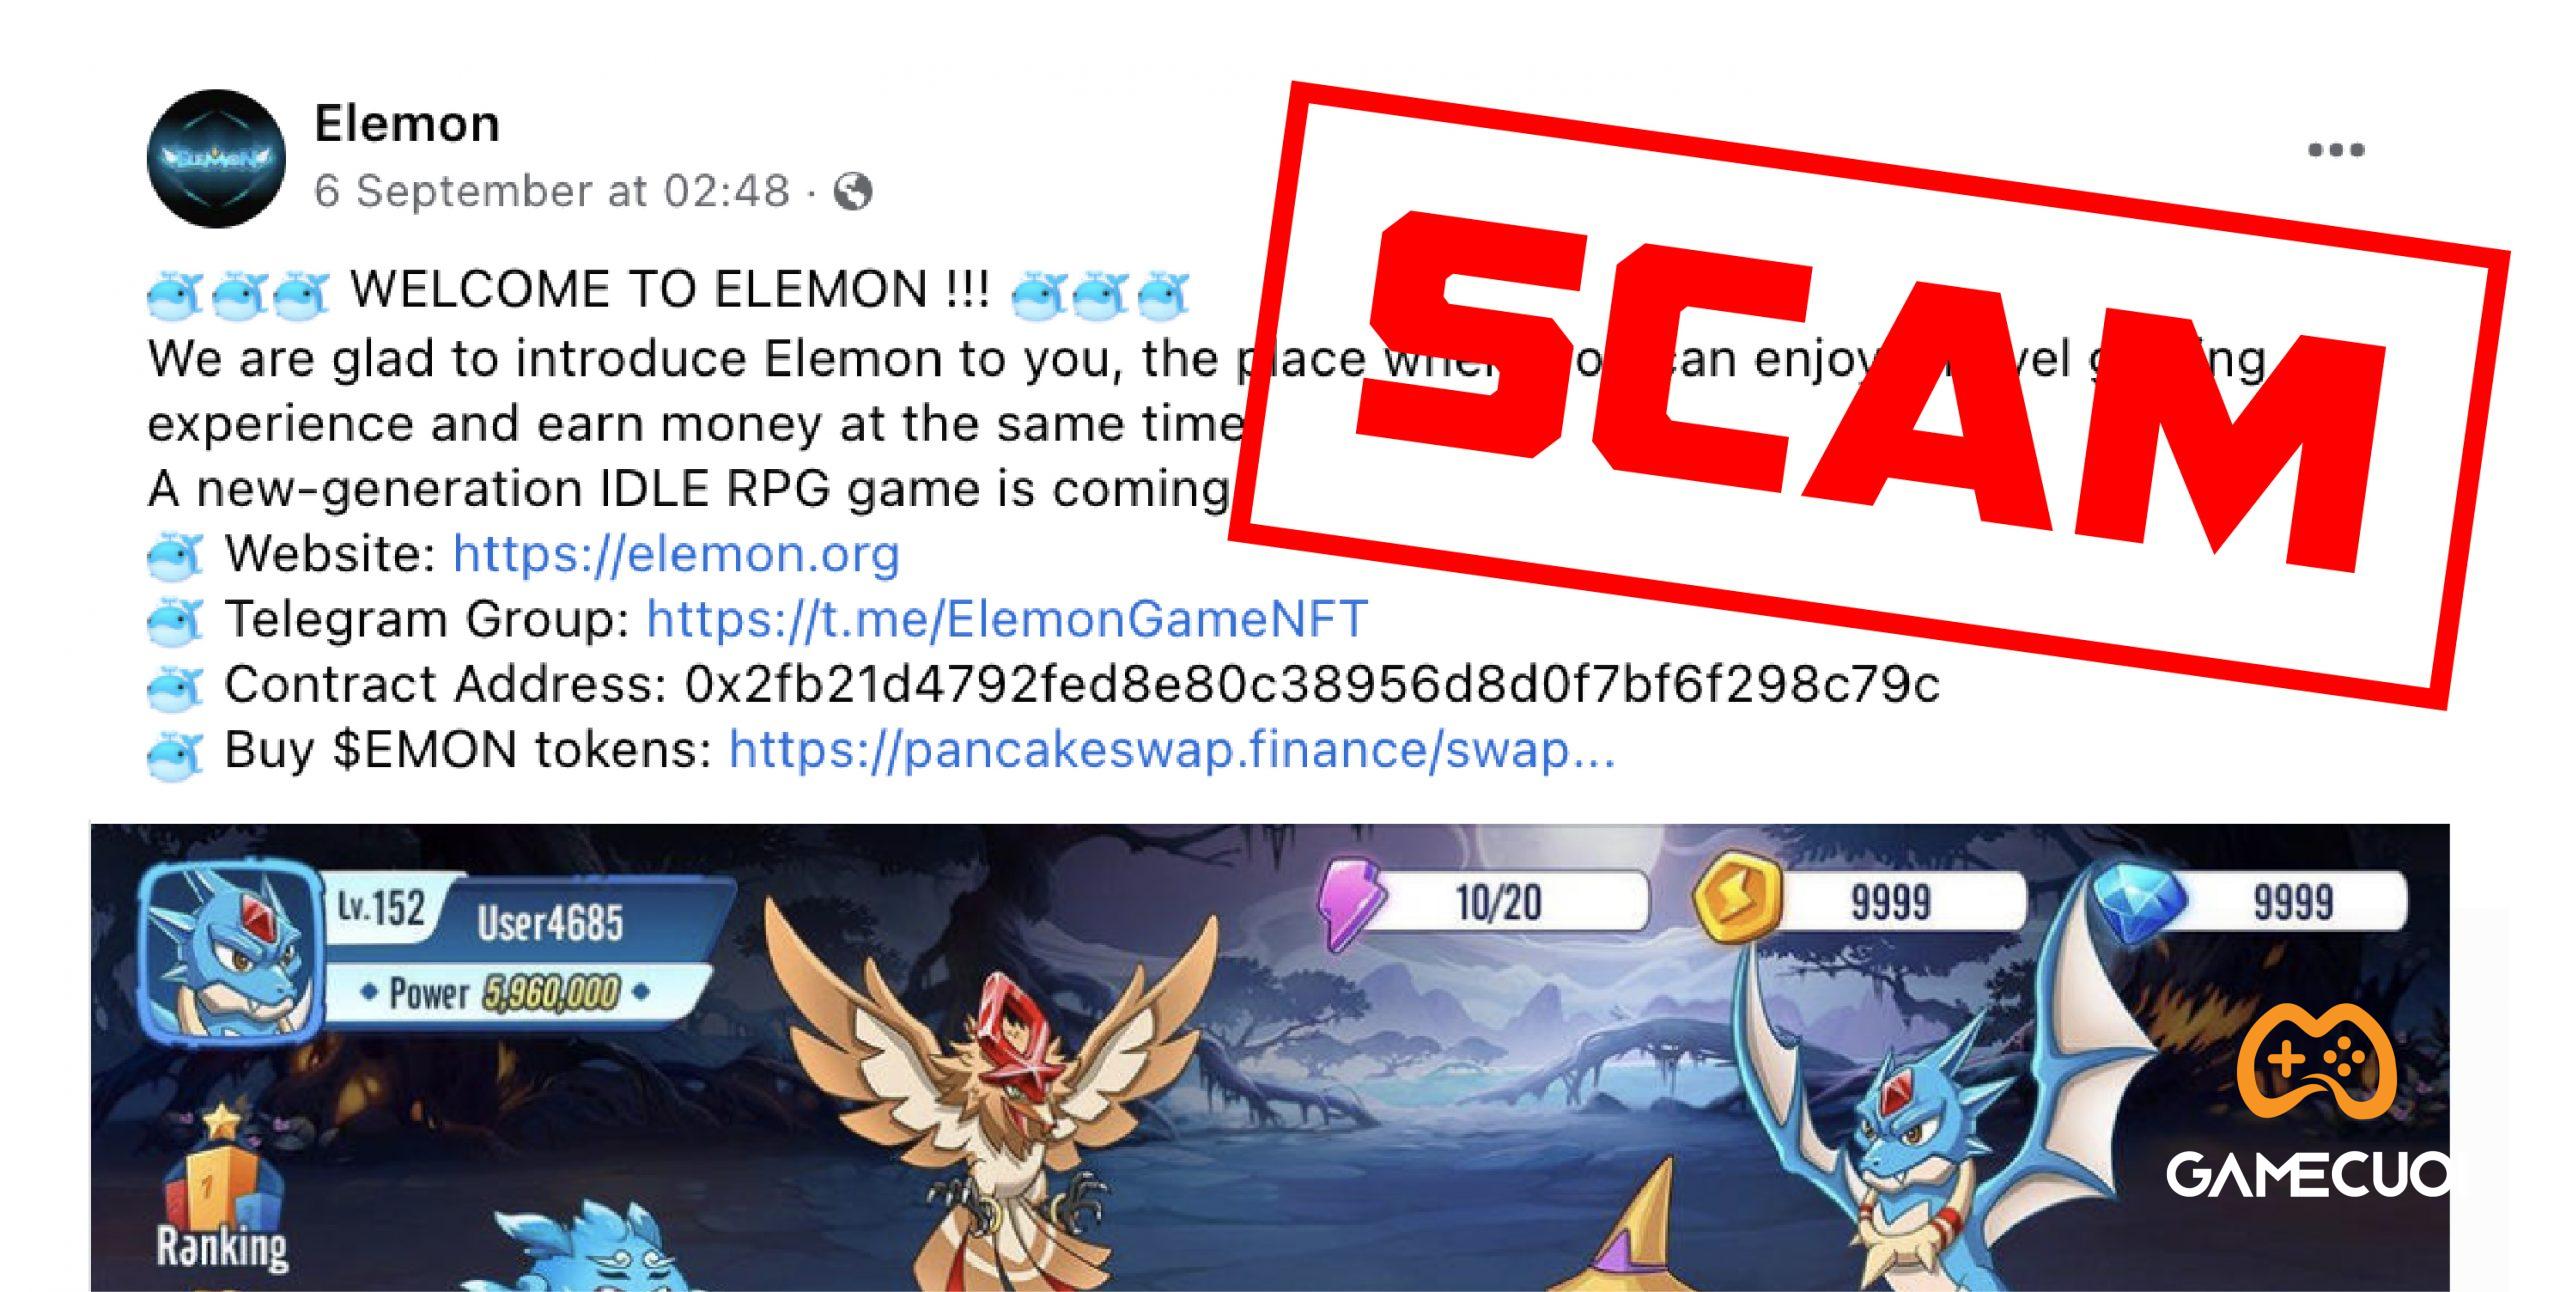 [Drama Crypto] ELEMON và những đêm không ngủ: Admin cộng đồng gần 43.000 thành viên tố dự án Elemon lừa đảo, khinh thường cộng đồng